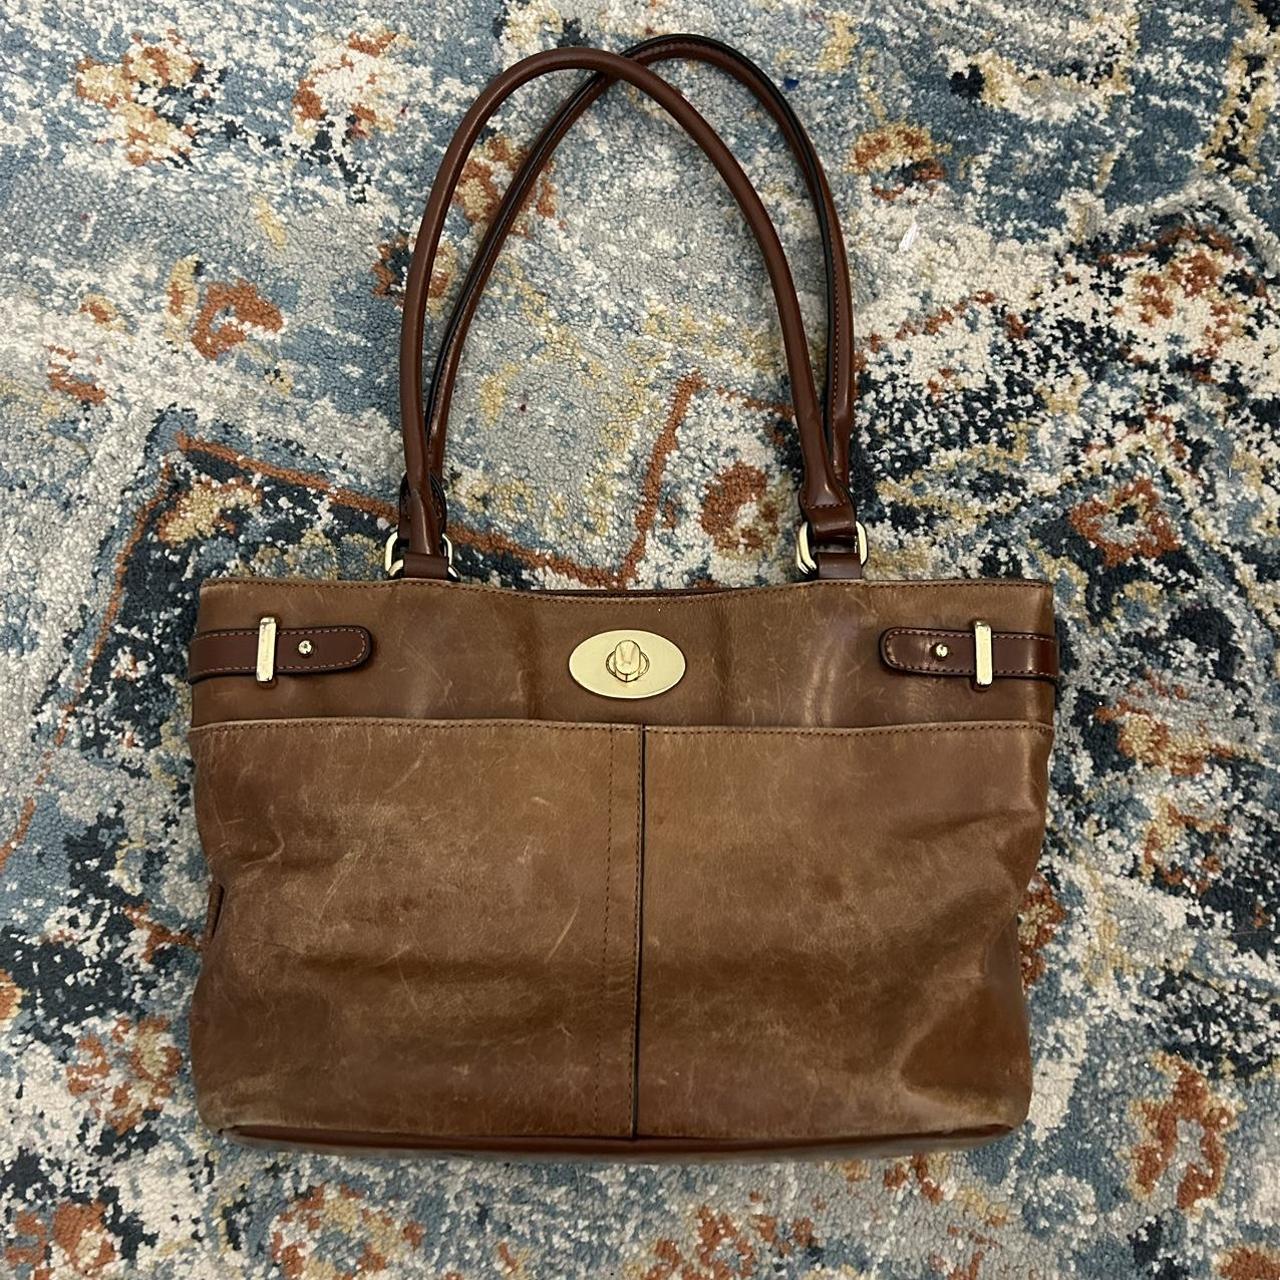 Genuine Bloomingdales medium Brown bag. Leather - Depop